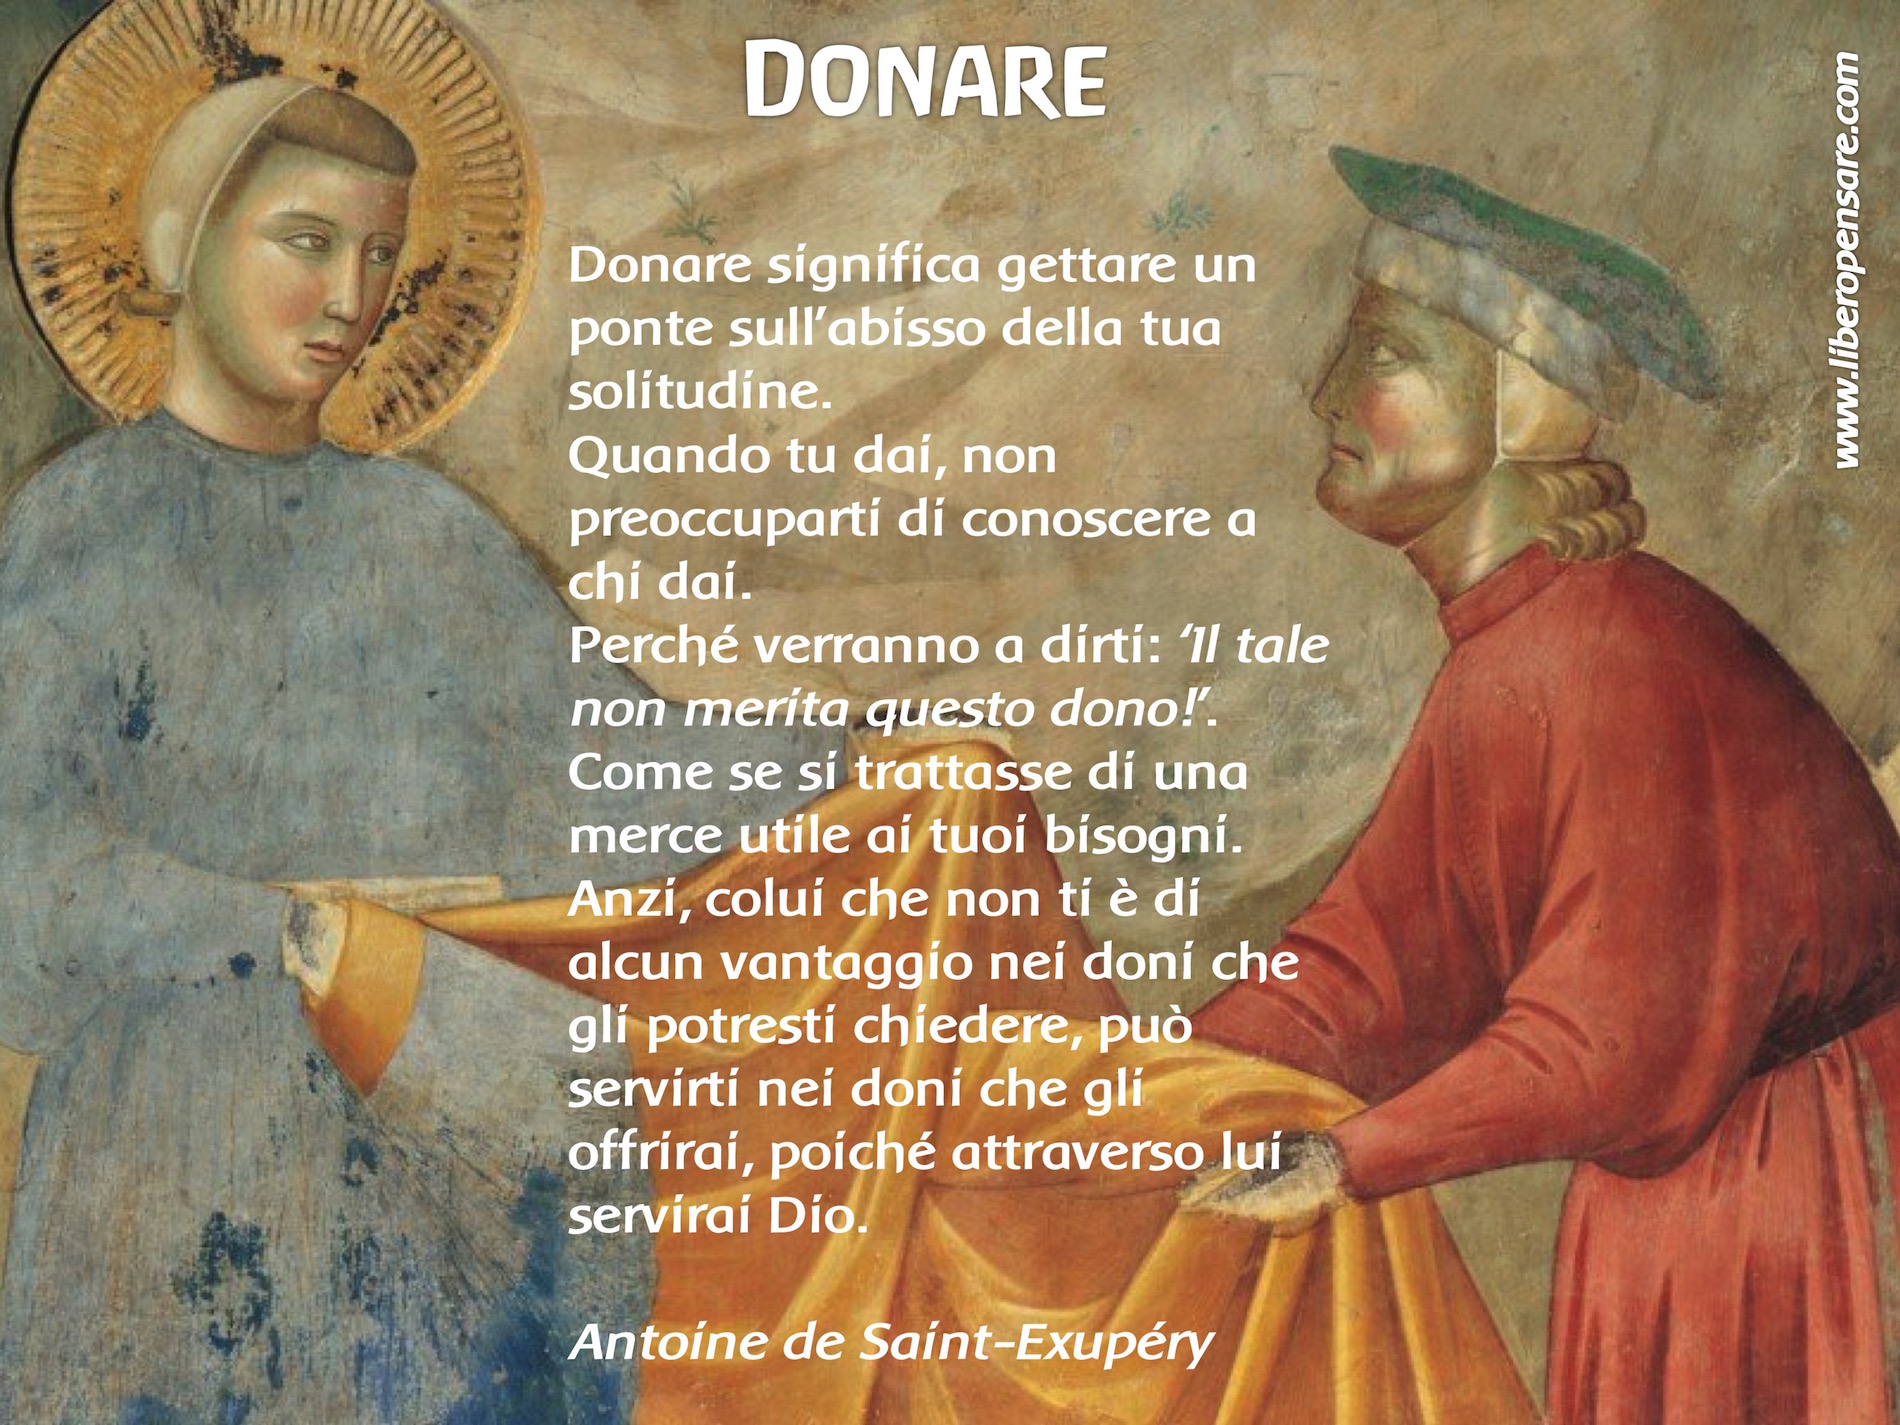 Donare Antoine de Saint-Exupery